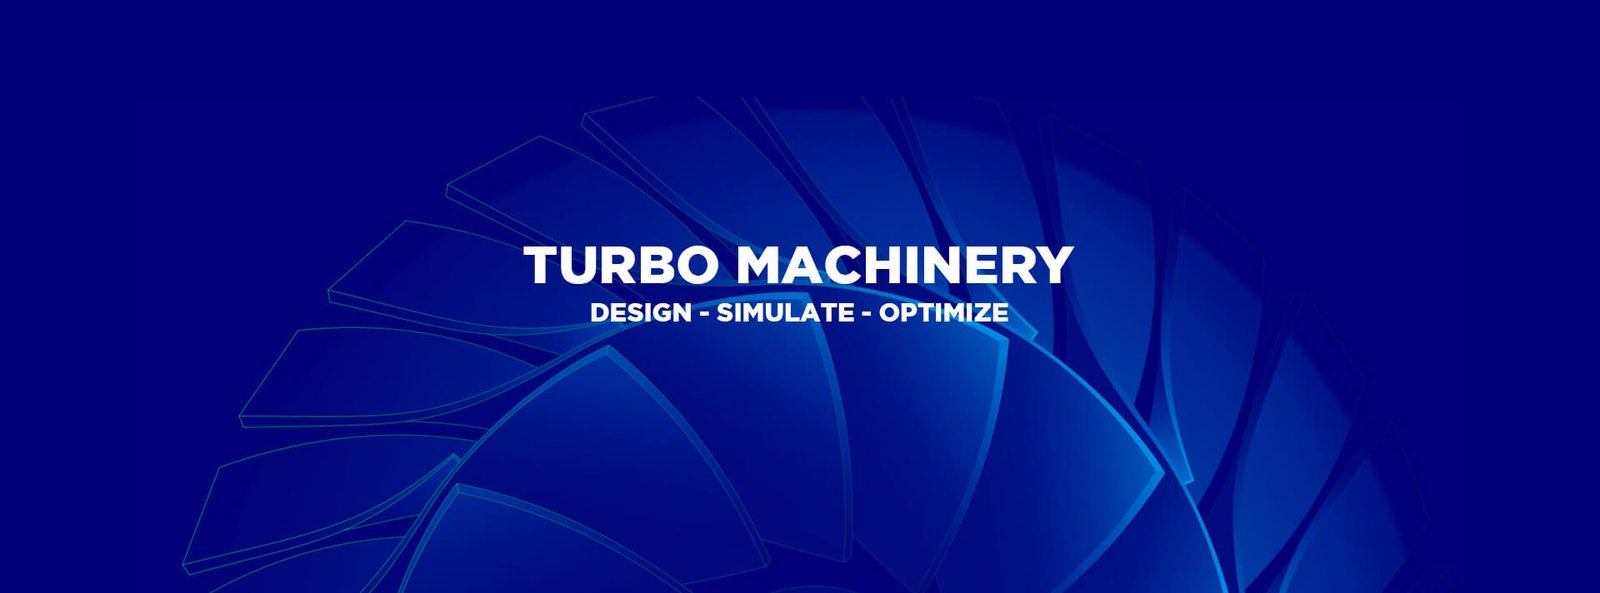 turbo machinery